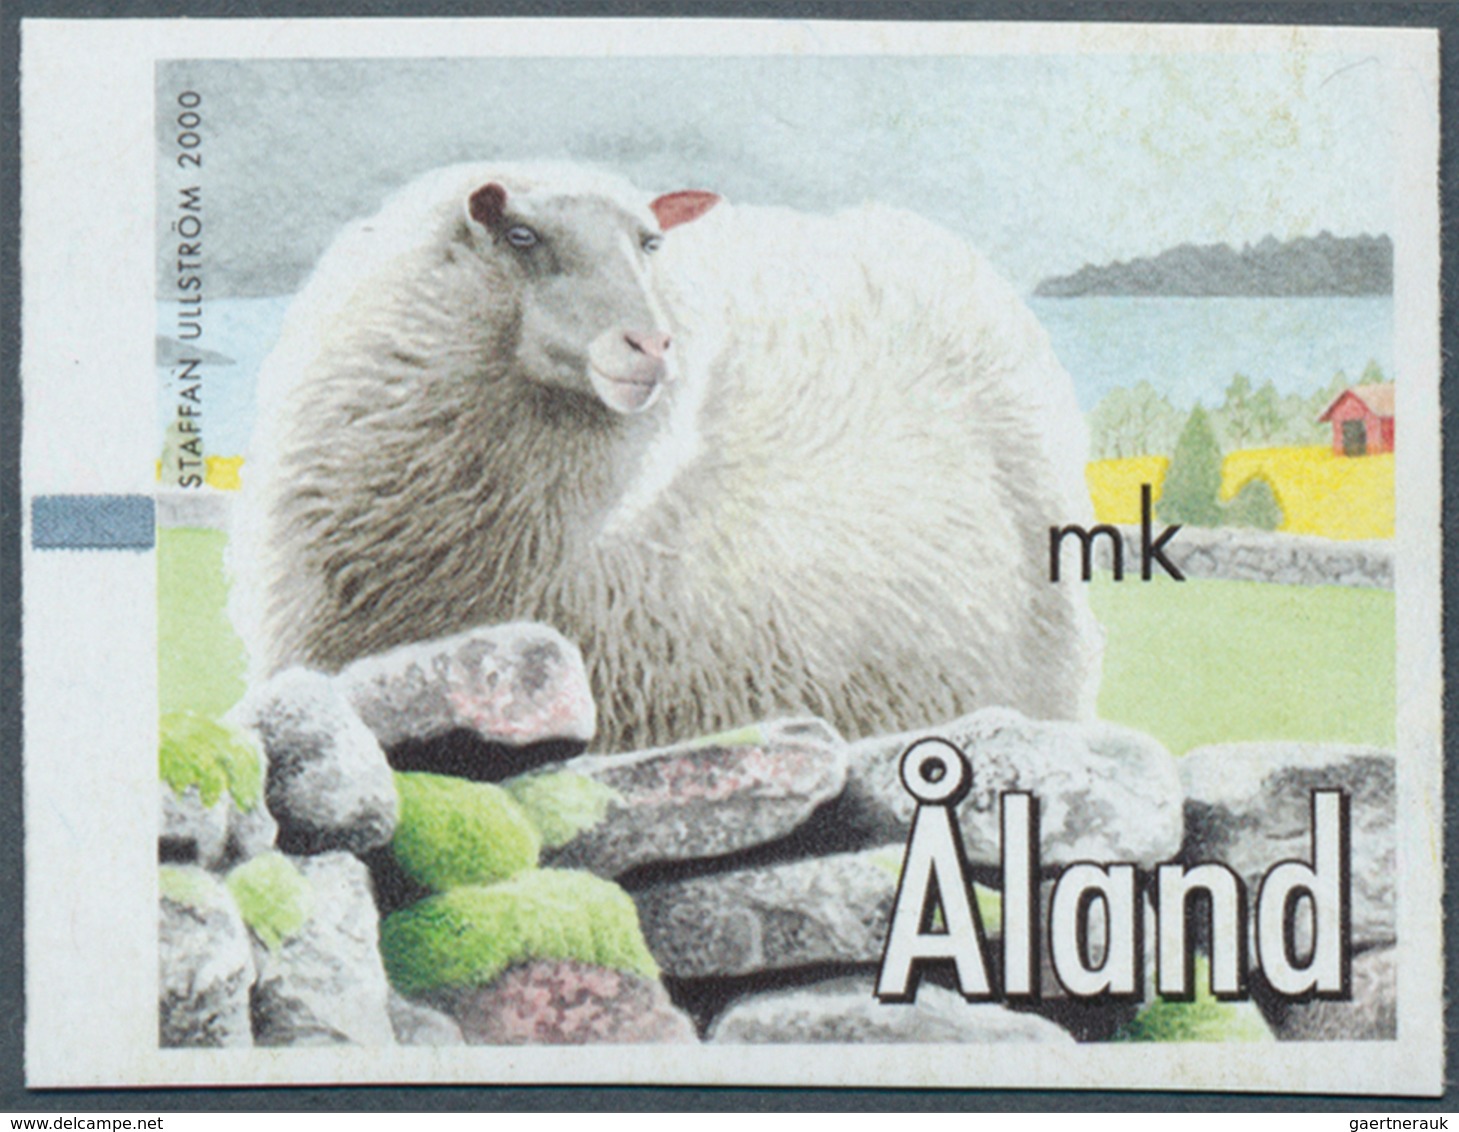 13540 Finnland - Alandinseln: Machine Labels: 2000, Design "Sheep" Without Imprint Of Value, Unmounted Min - Ålandinseln